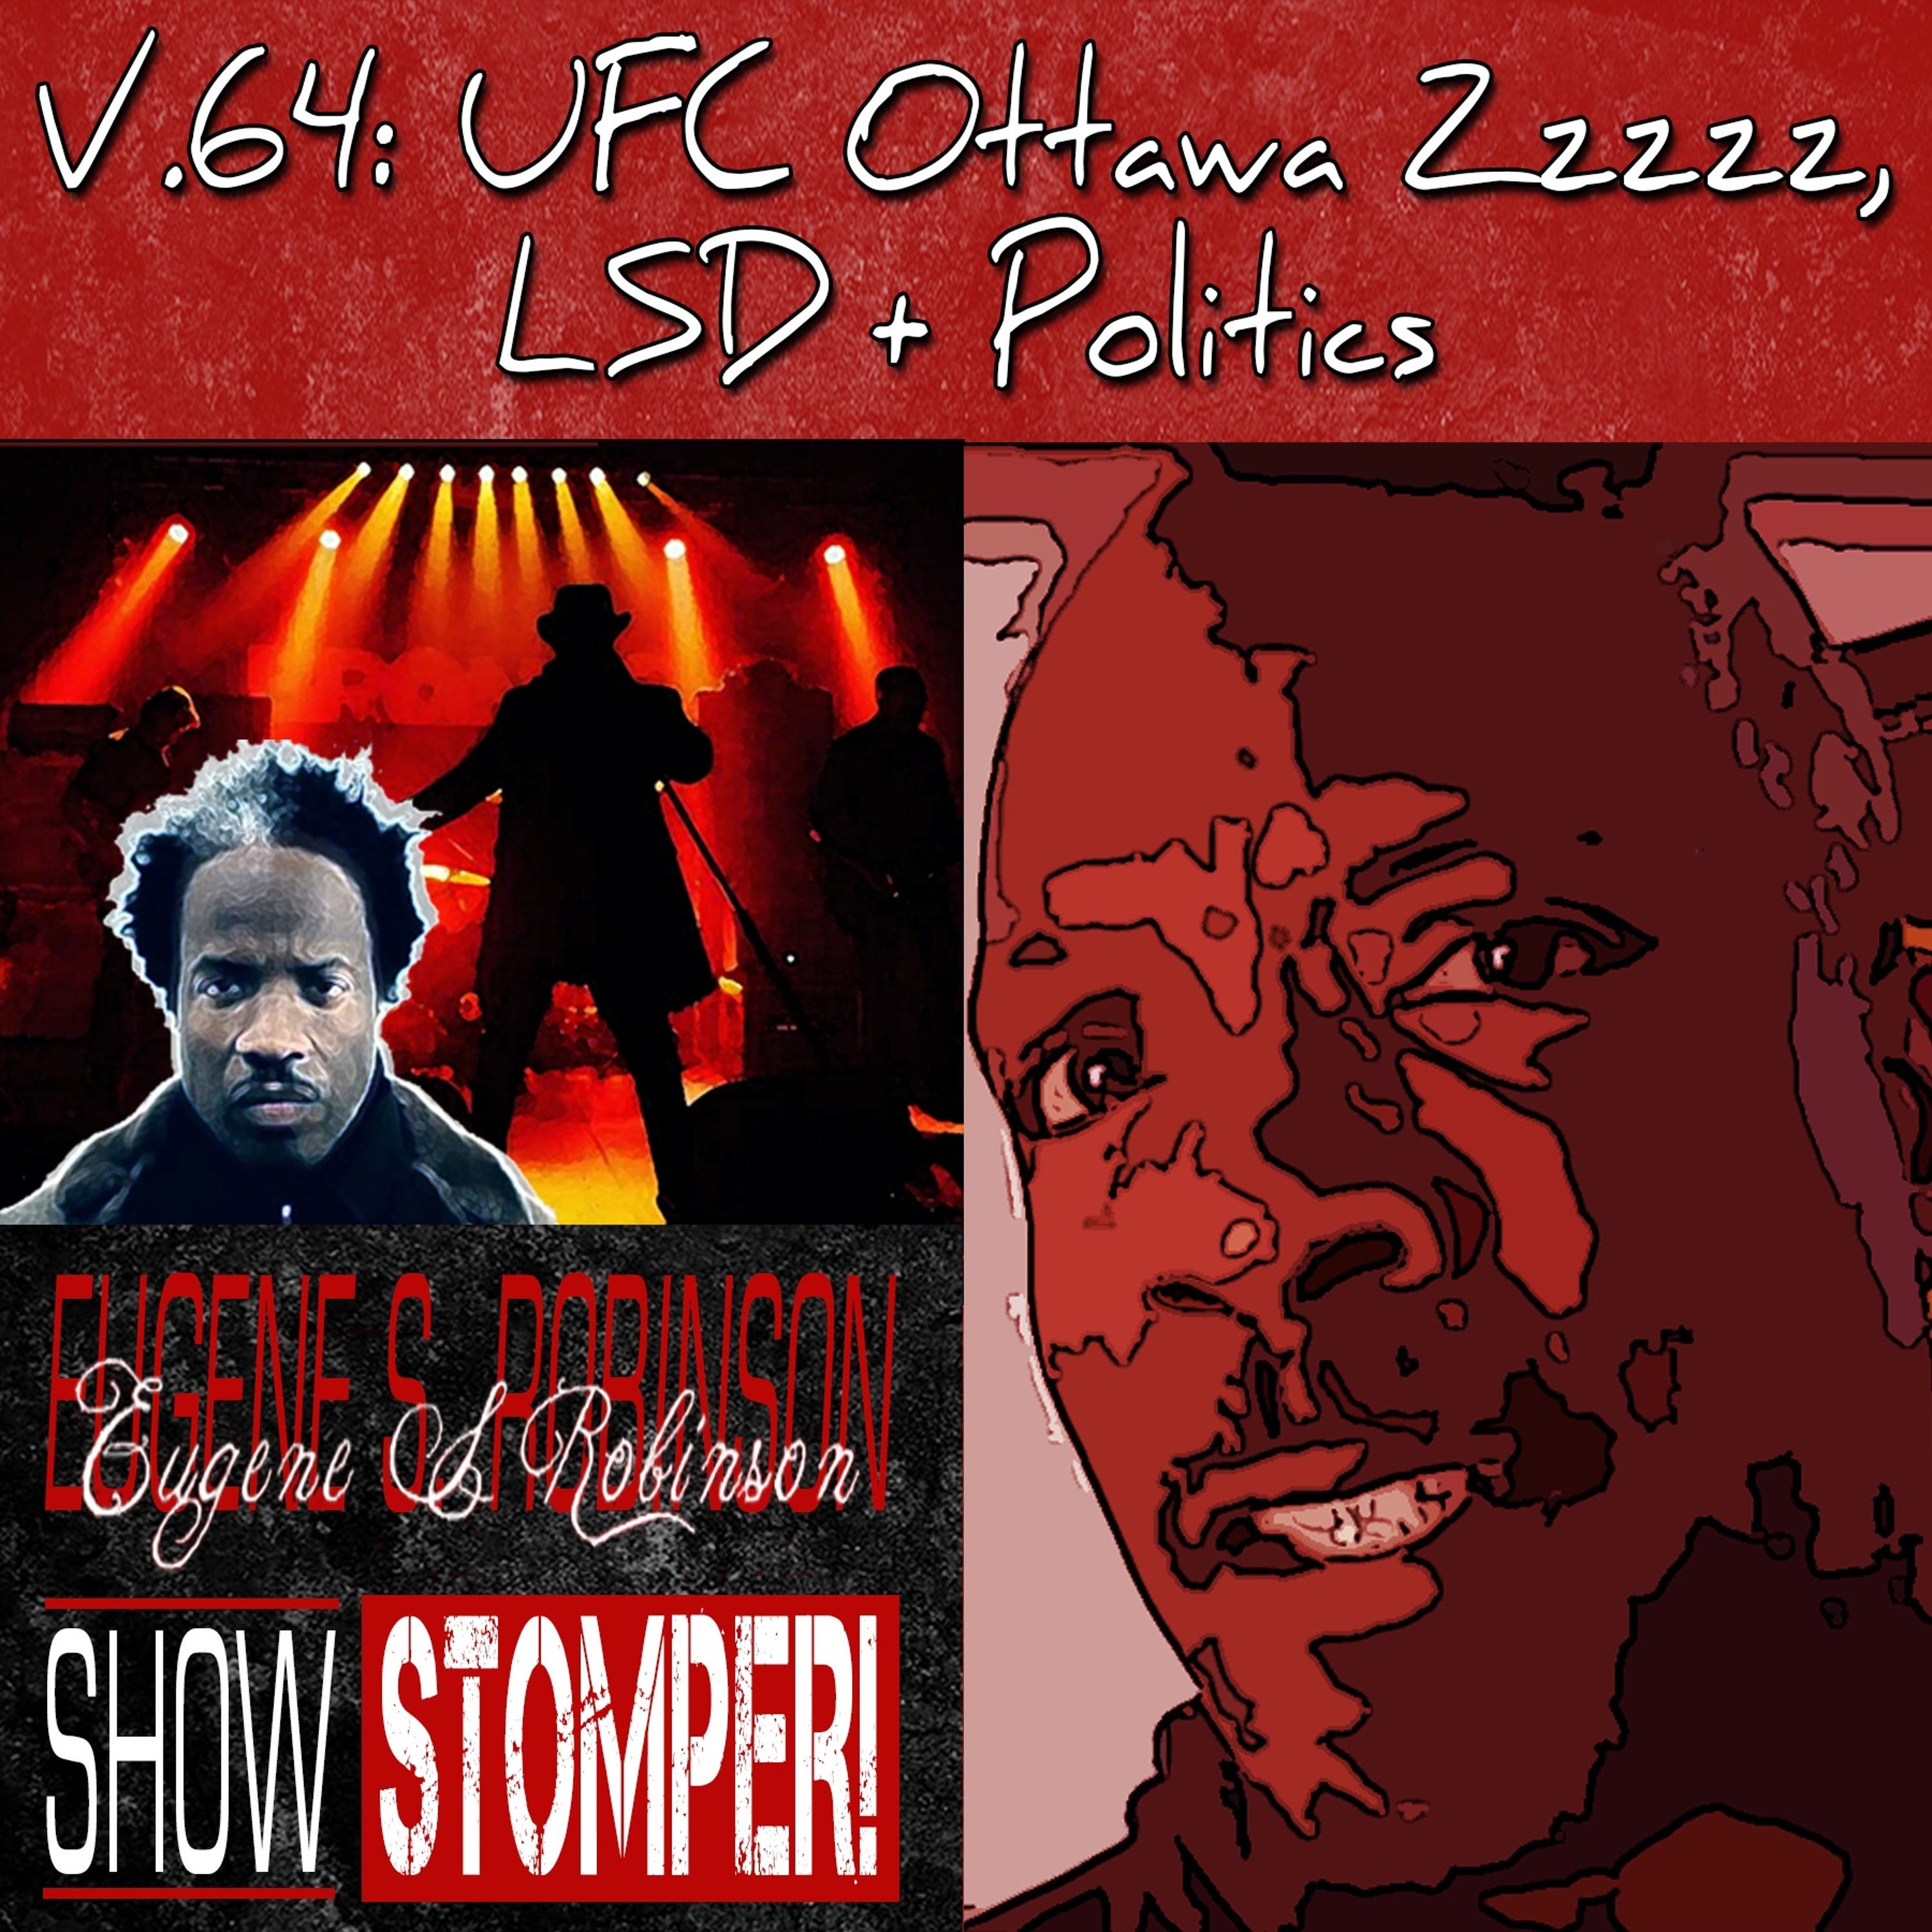 V.64 UFC Ottawa Zzzzz, LSD + Politics On The Eugene S. Robinson Show Stomper!